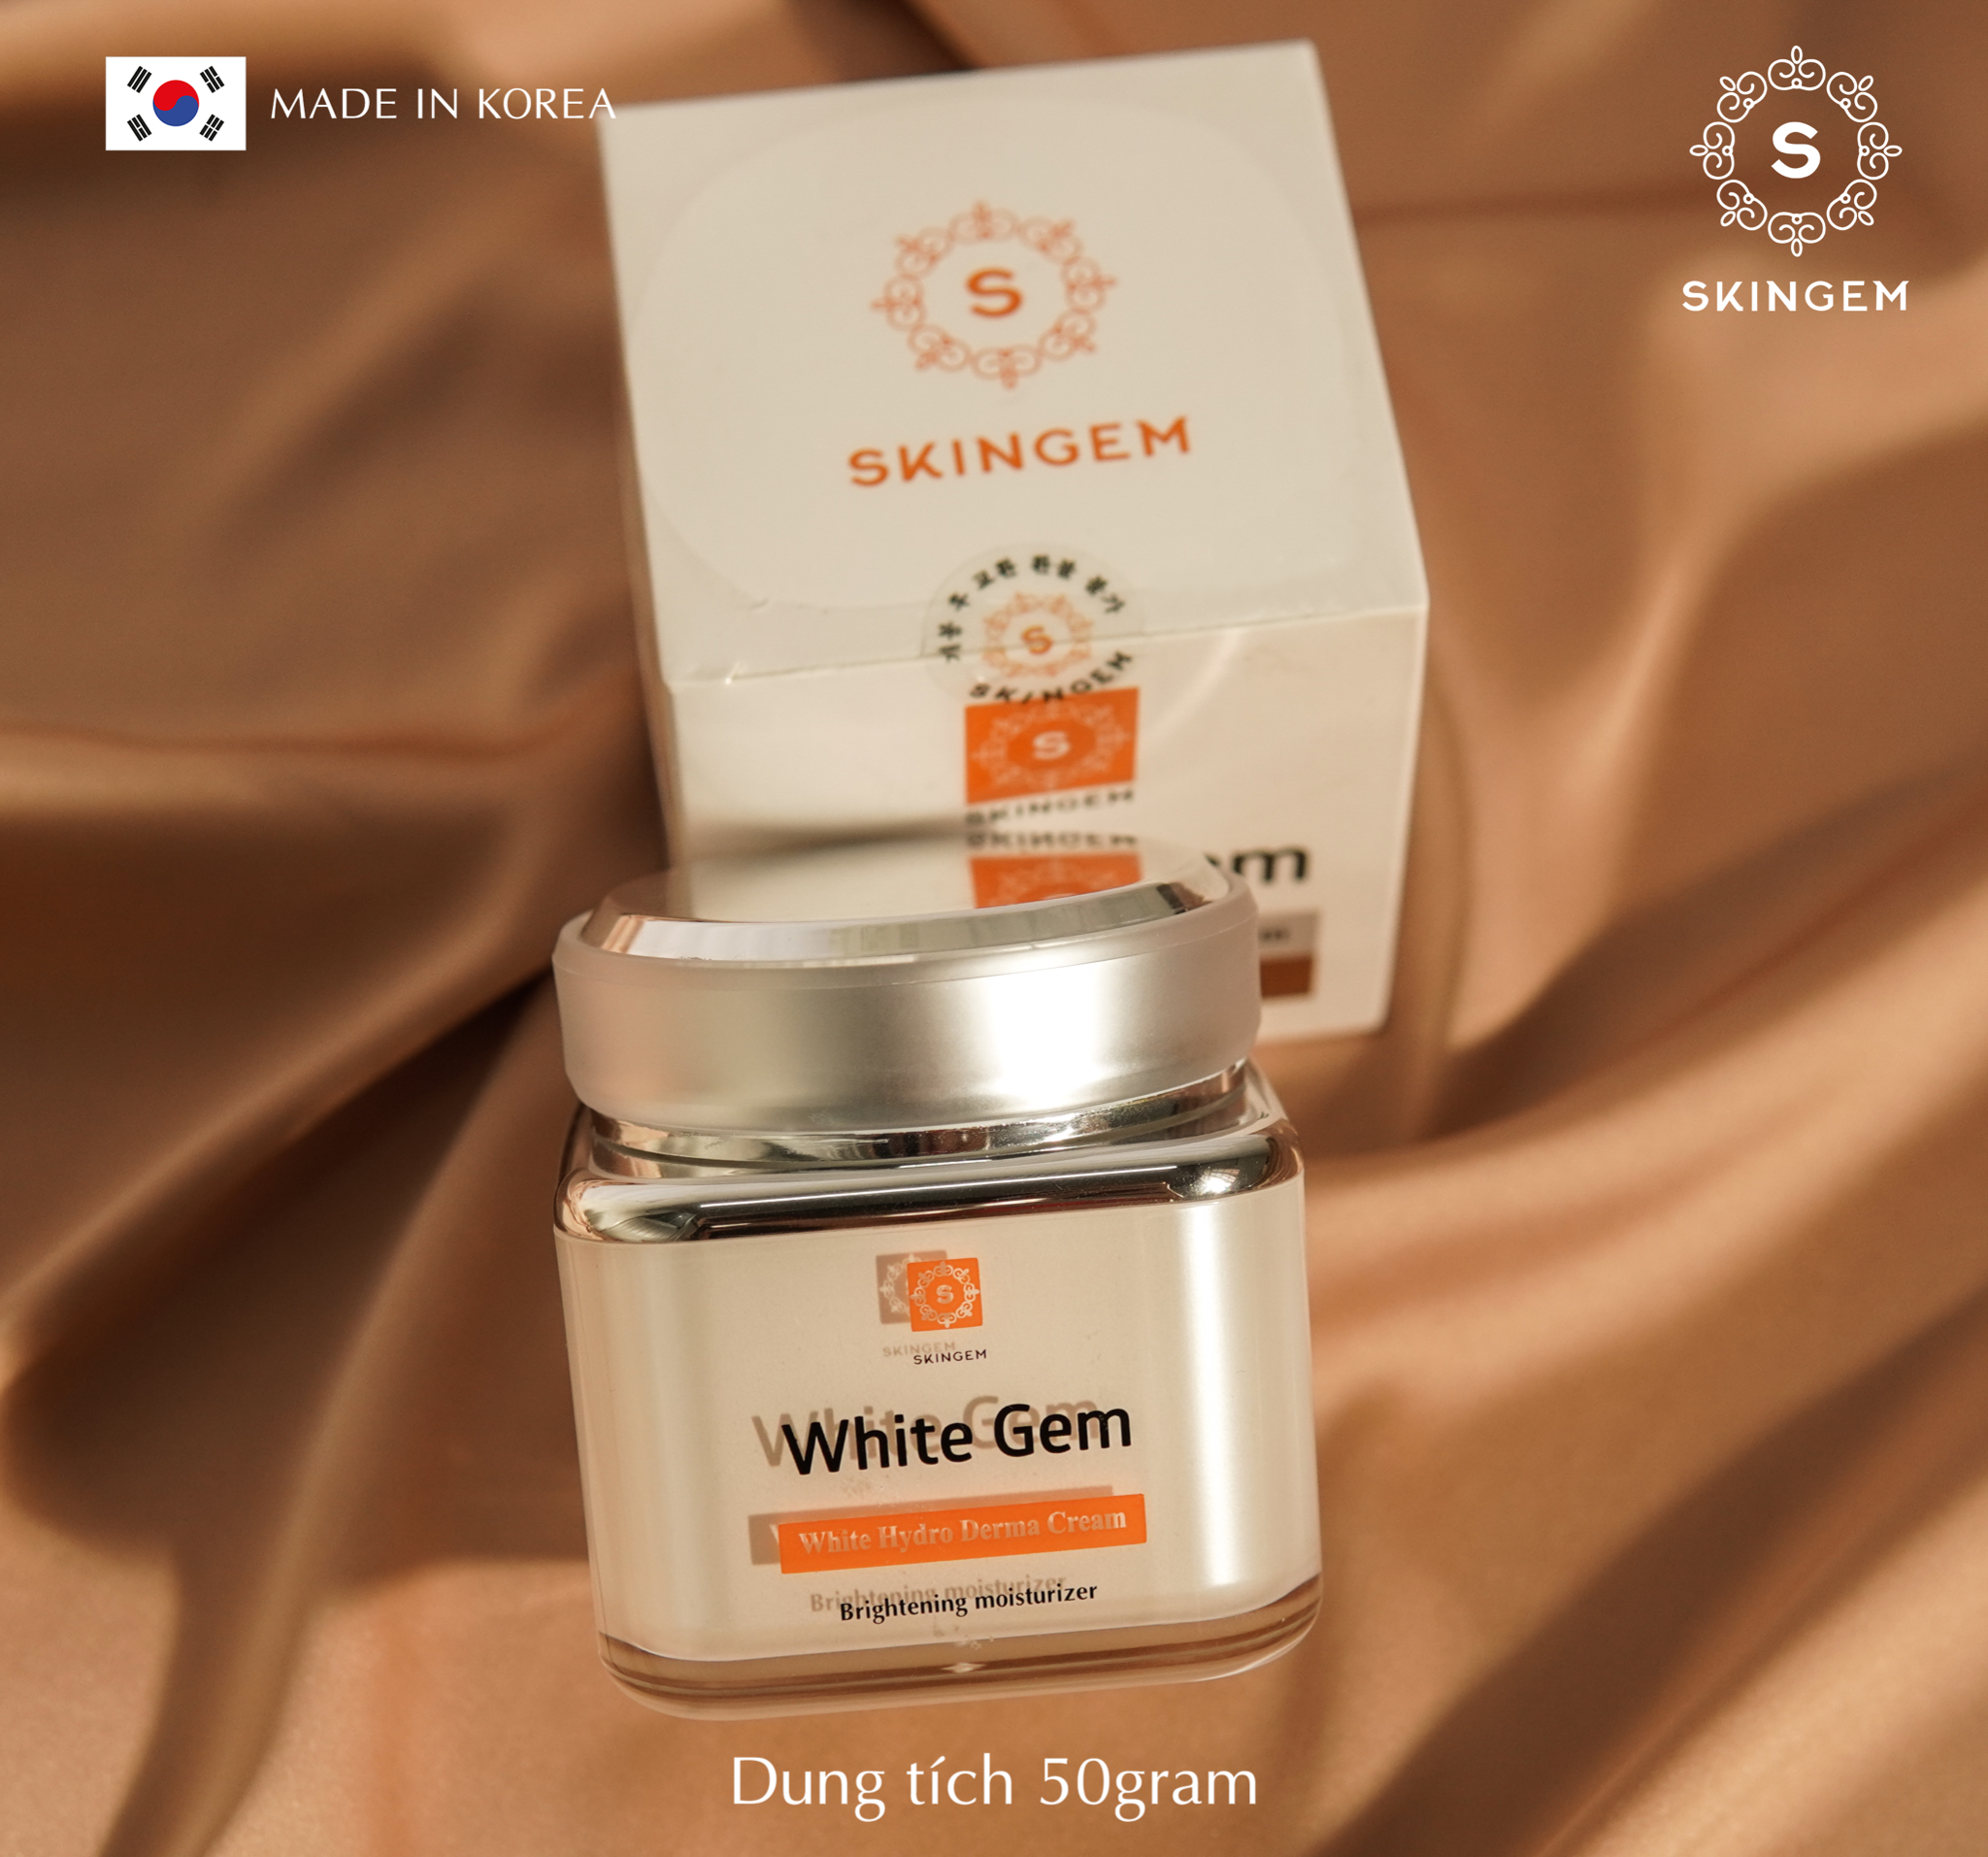  Kem White Gem Skingem Hàn Quốc - Dưỡng trắng chuyên sâu. 